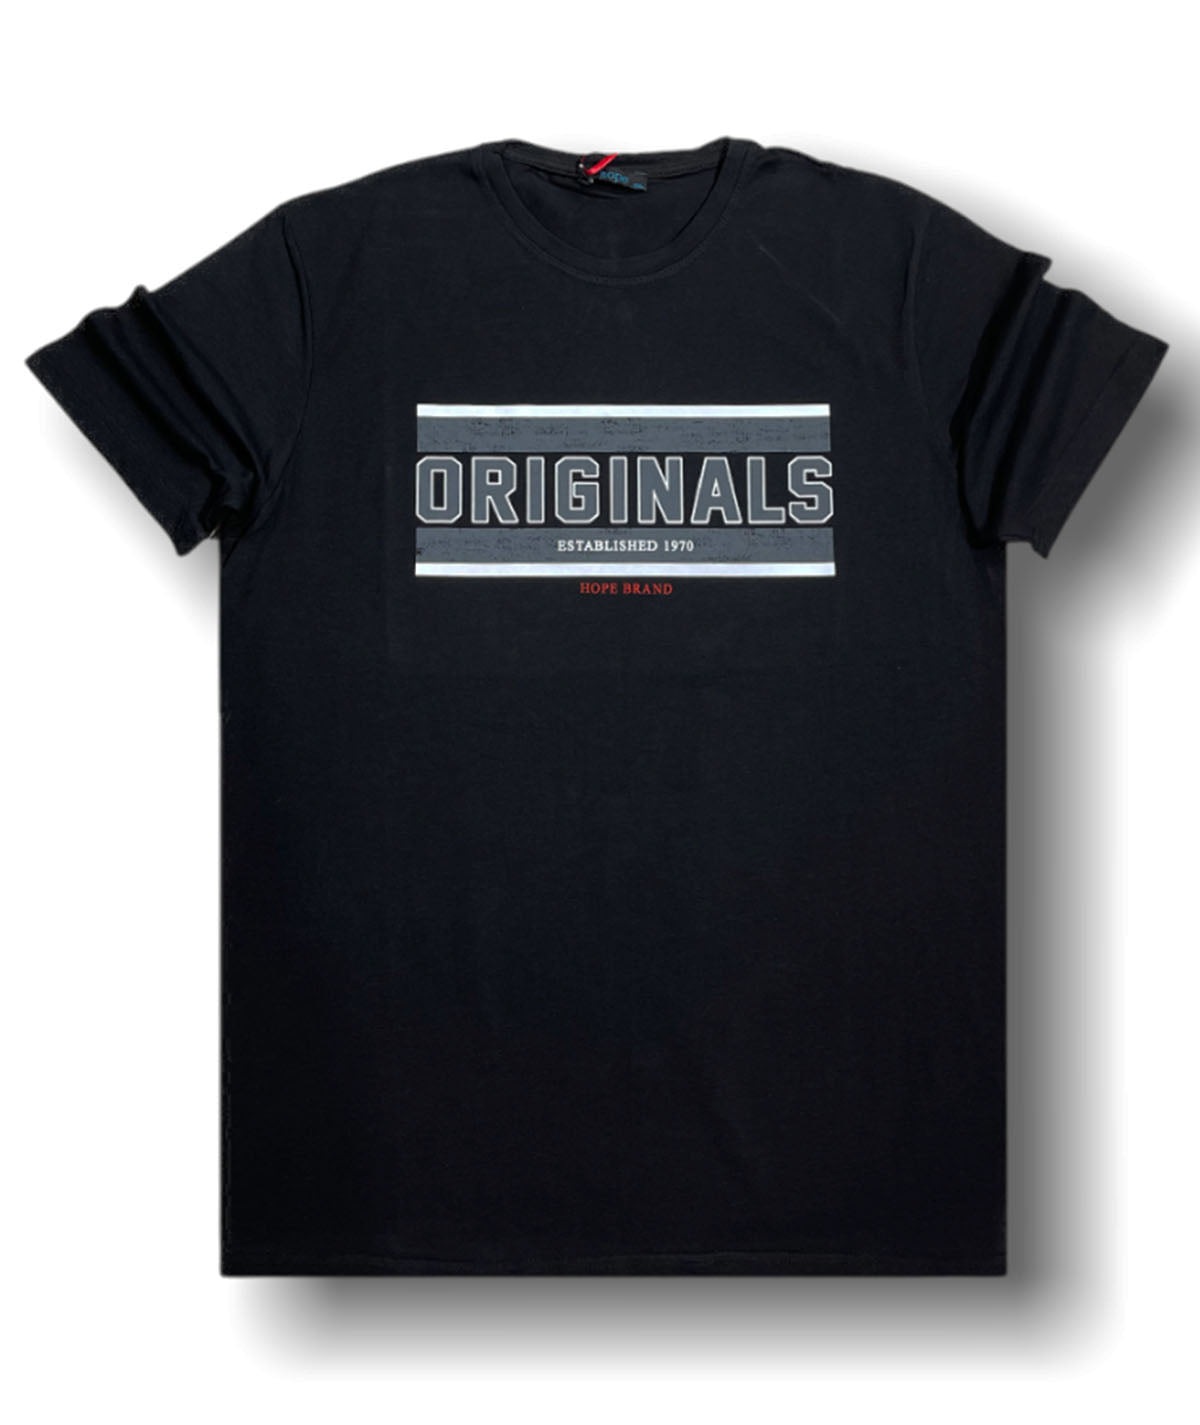 Ανδρικό t-shirt Originals “Montaz Collection” (7600292364546)